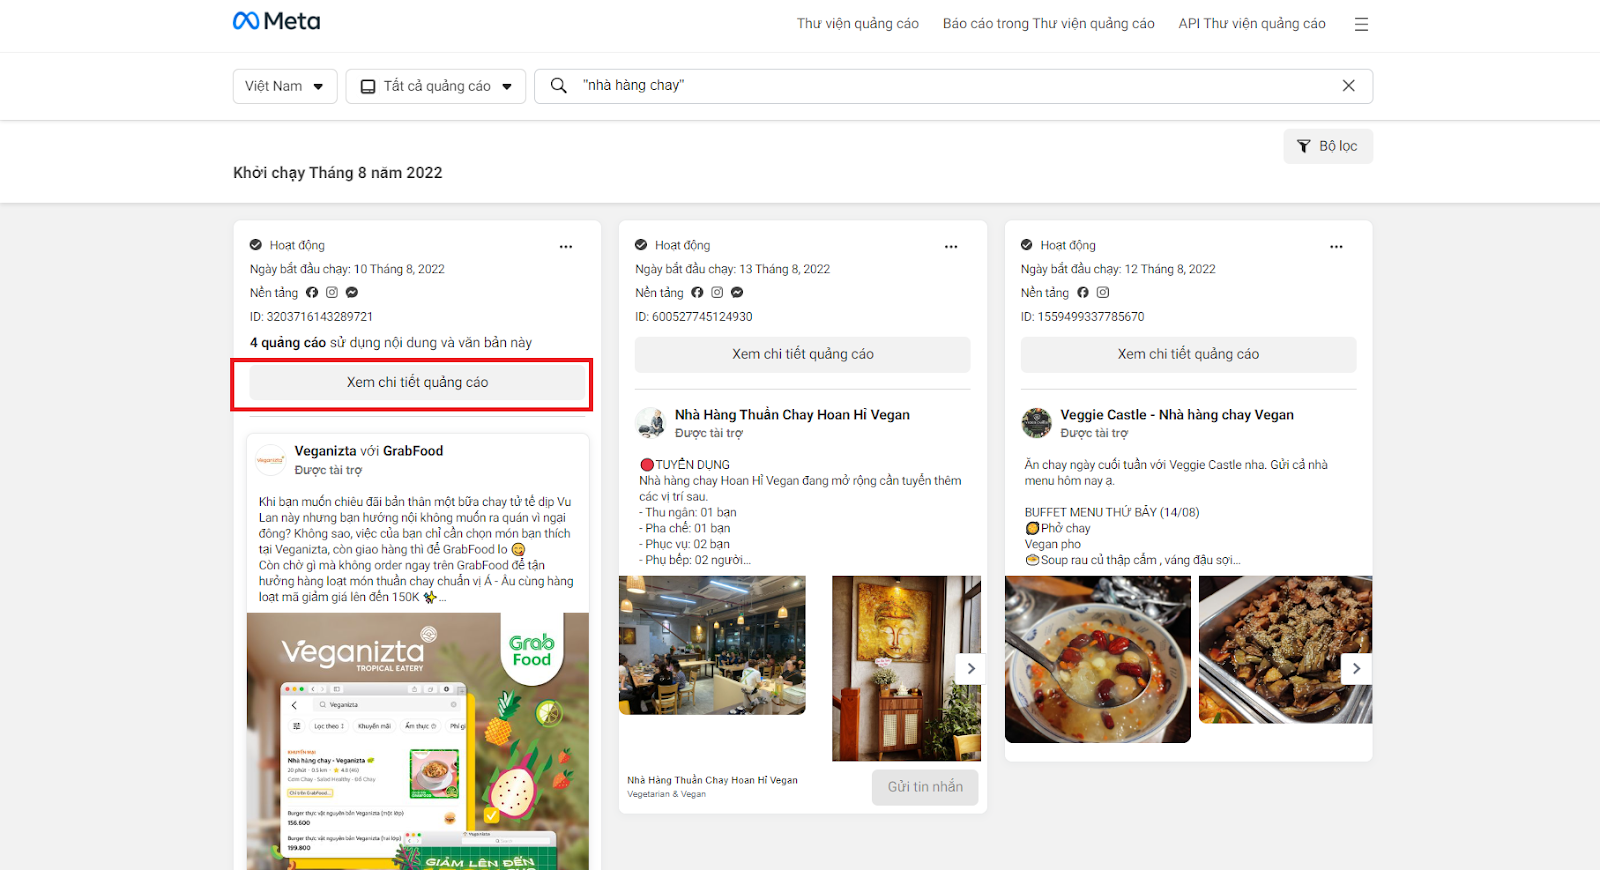 Digital Marketing ngành Nhà hàng - Nhà hàng chay trên nền tảng Facebook